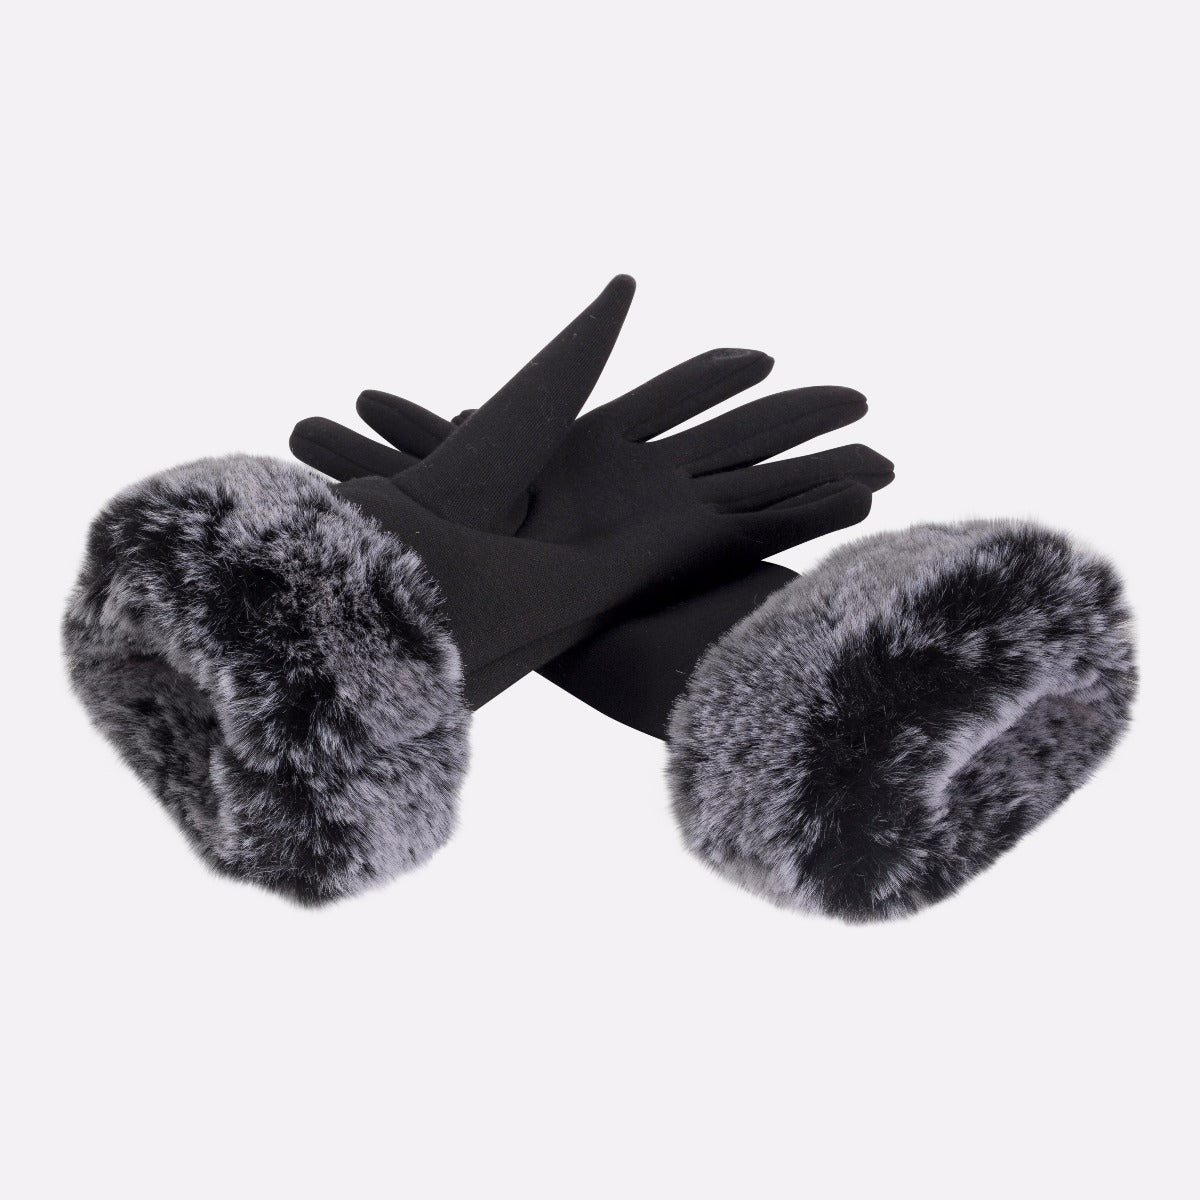 Gants tactiles noirs avec fausse fourrure grise